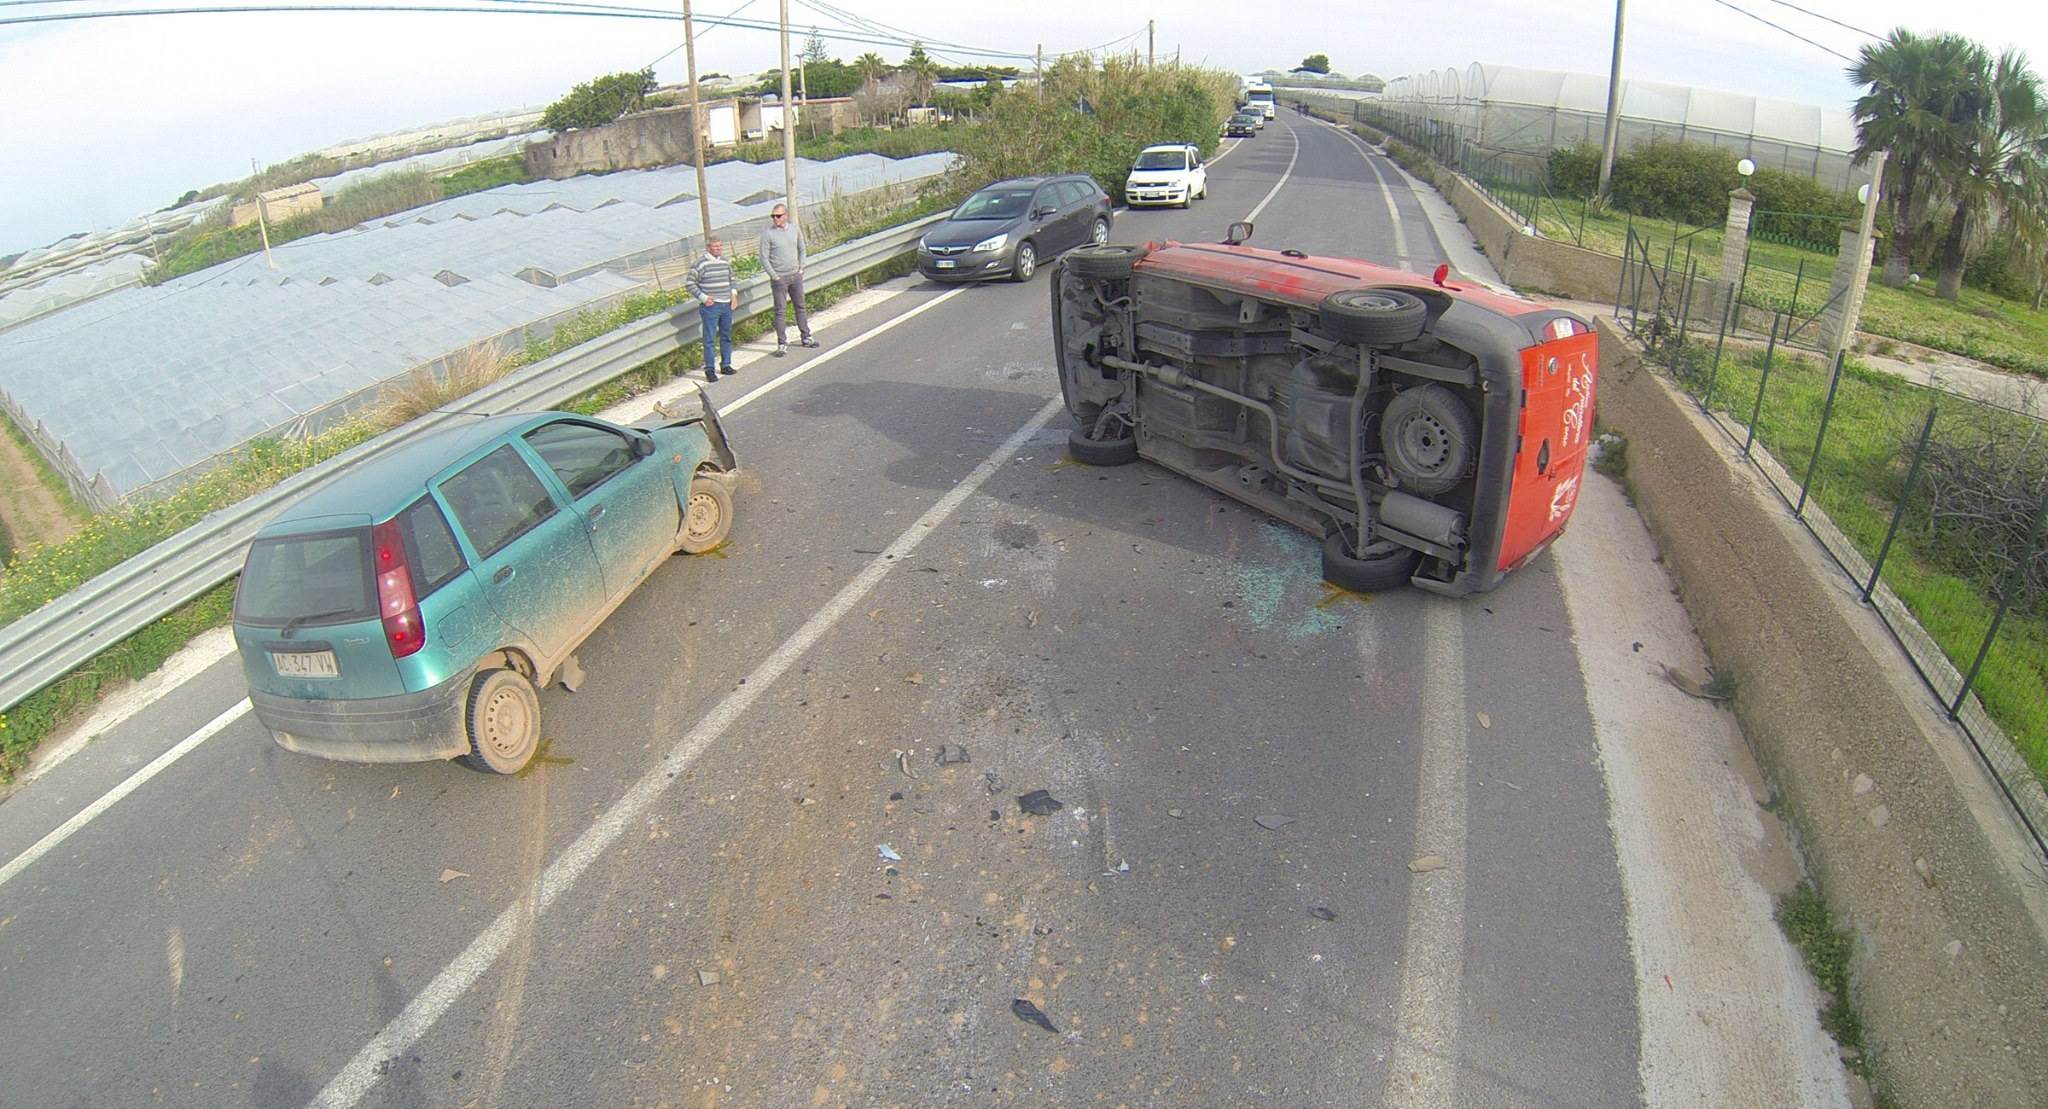  Incidente d’auto sulla s.p. 85 Scoglitti-Santa Croce: vettura si ribalta, lievi ferite per i conducenti